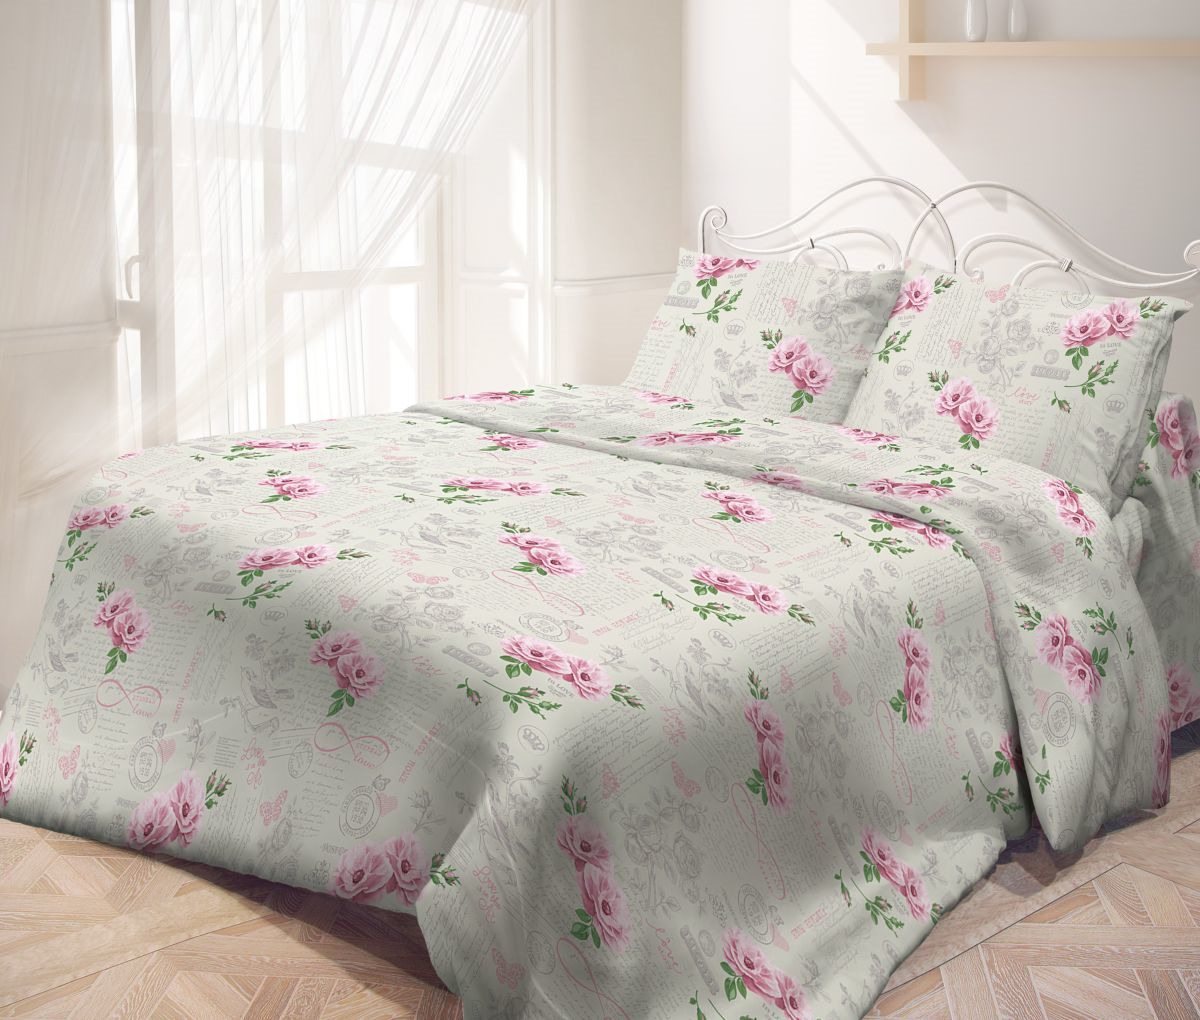 фото Комплект постельного белья Самойловский текстиль Влюбленность, 2-спальный, наволочки 70x70, белый, зеленый, розовый